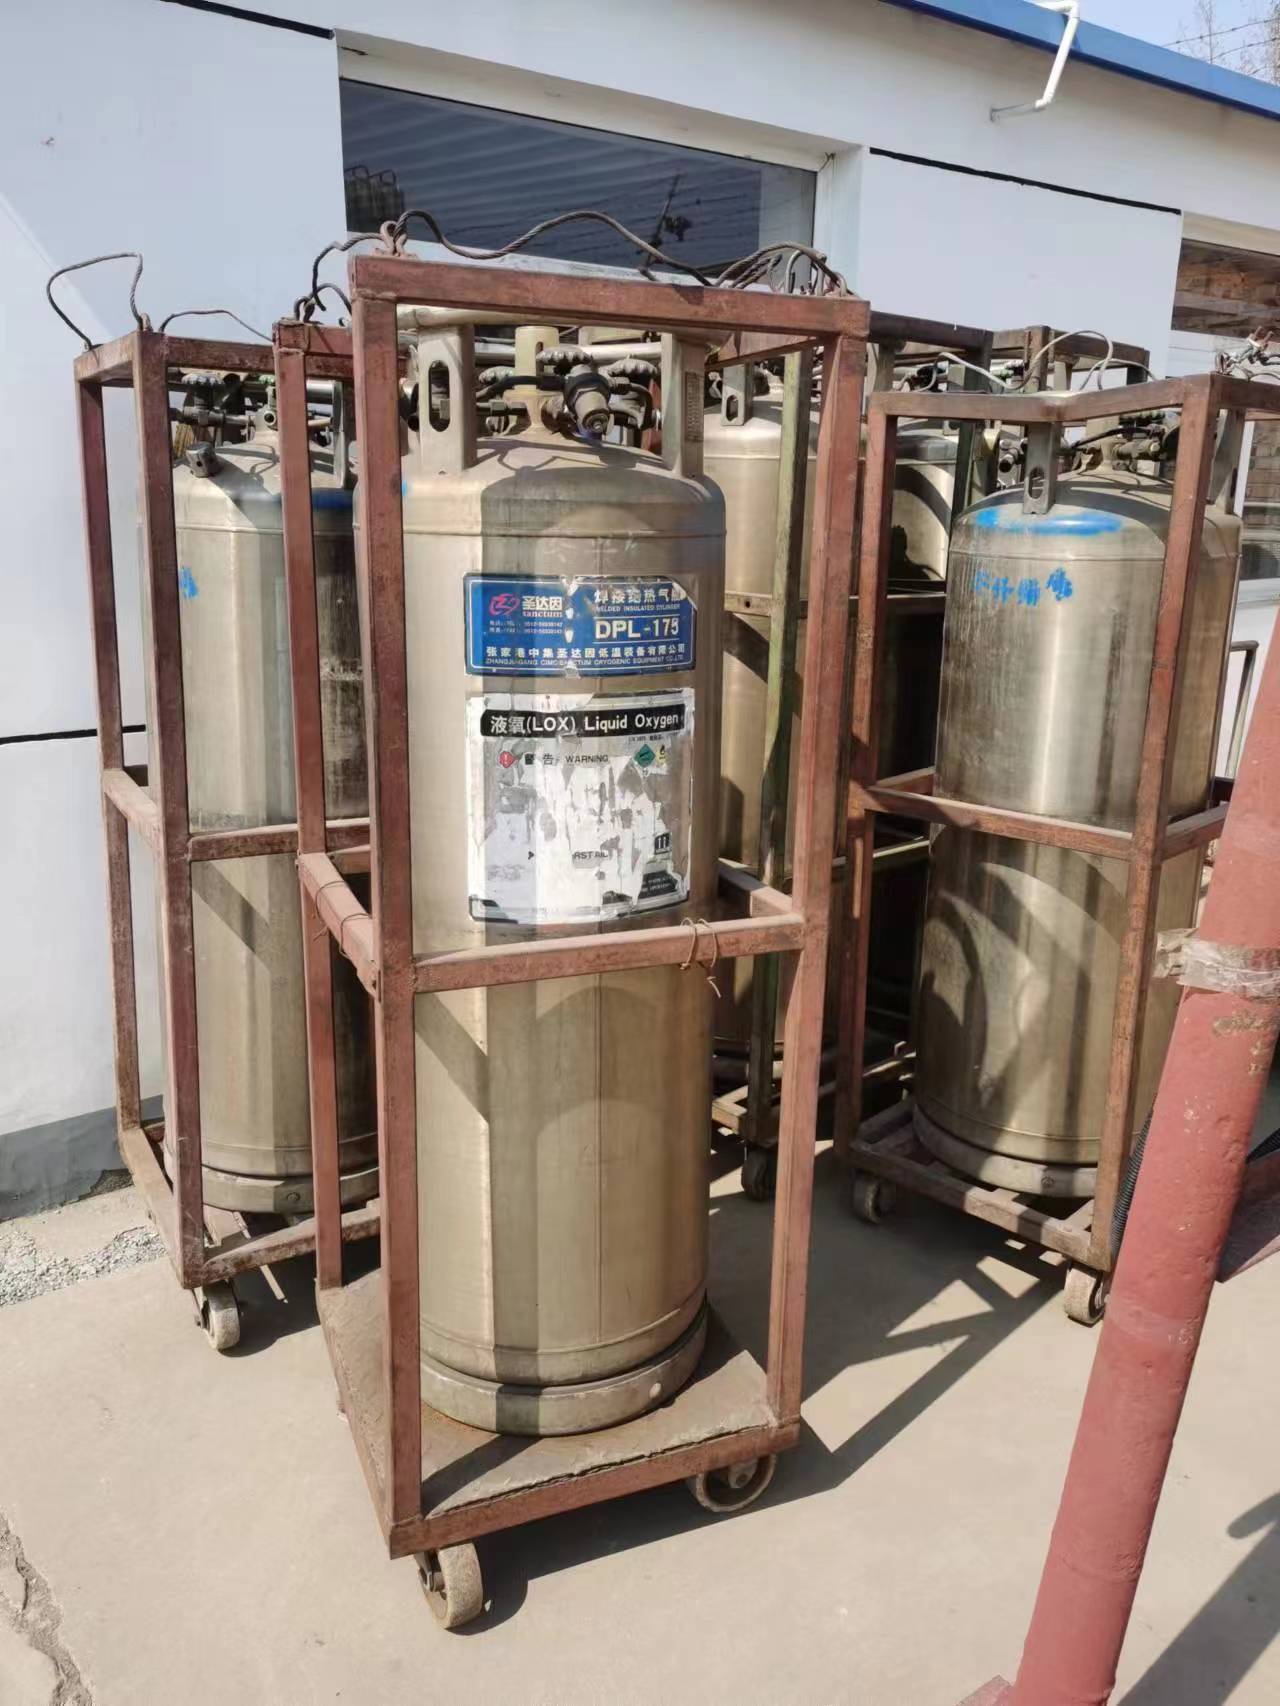 天津液氧供应商 液氧厂家零售 天津液氧厂家报价 液氧哪里有便宜